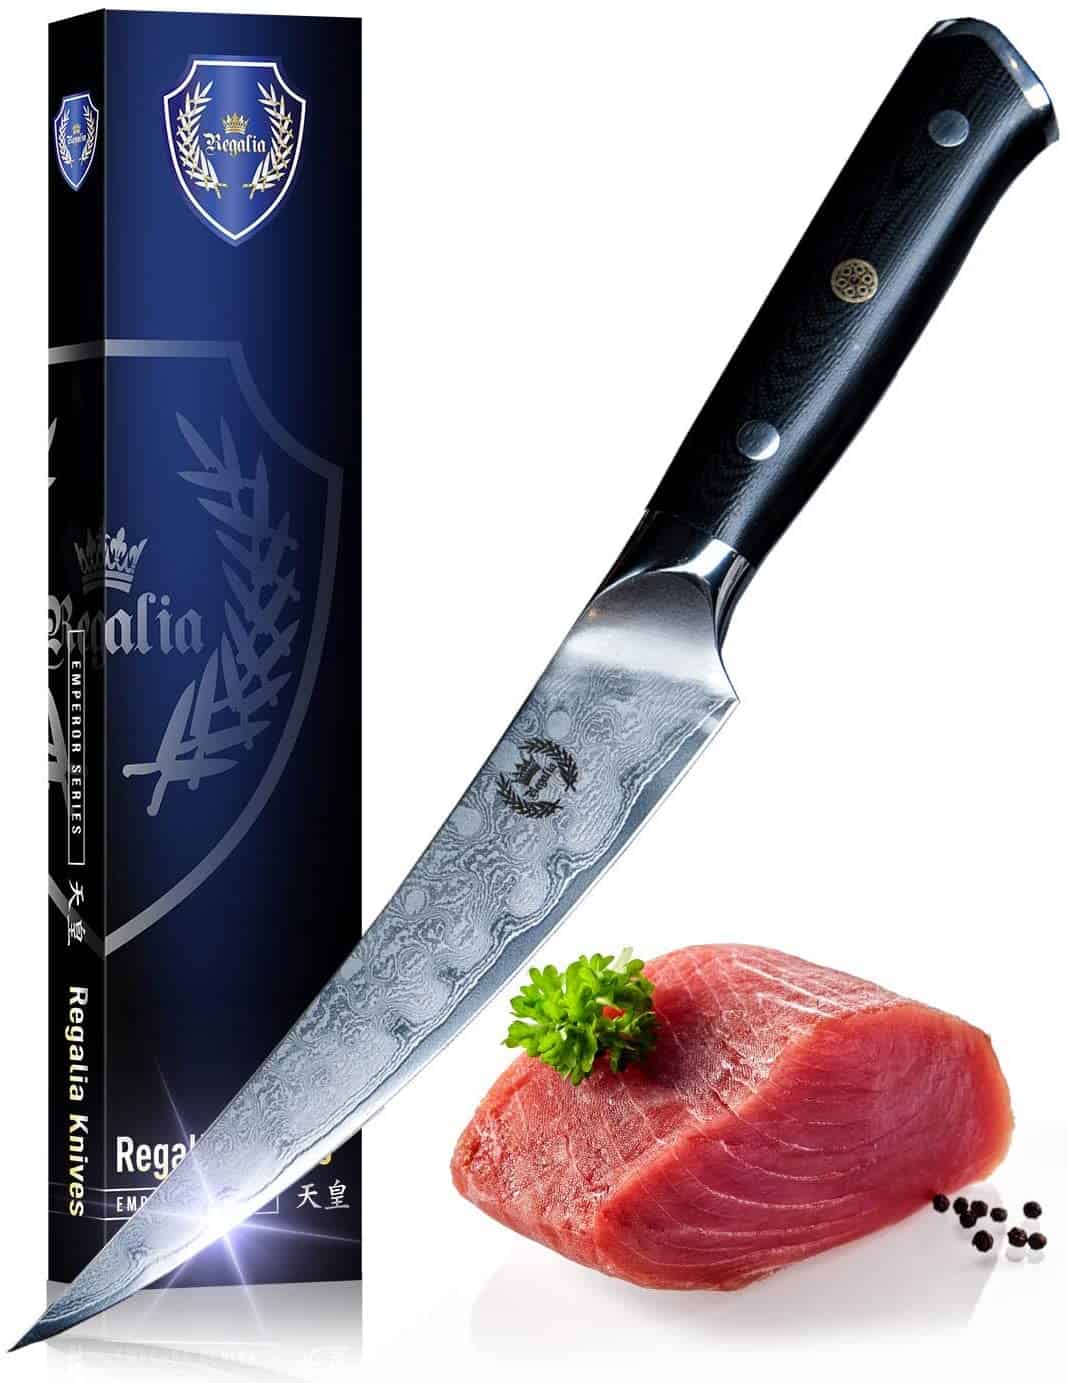 ベストAUS10日本の鋼製骨抜きナイフ-レガリア骨抜き：フィレナイフ